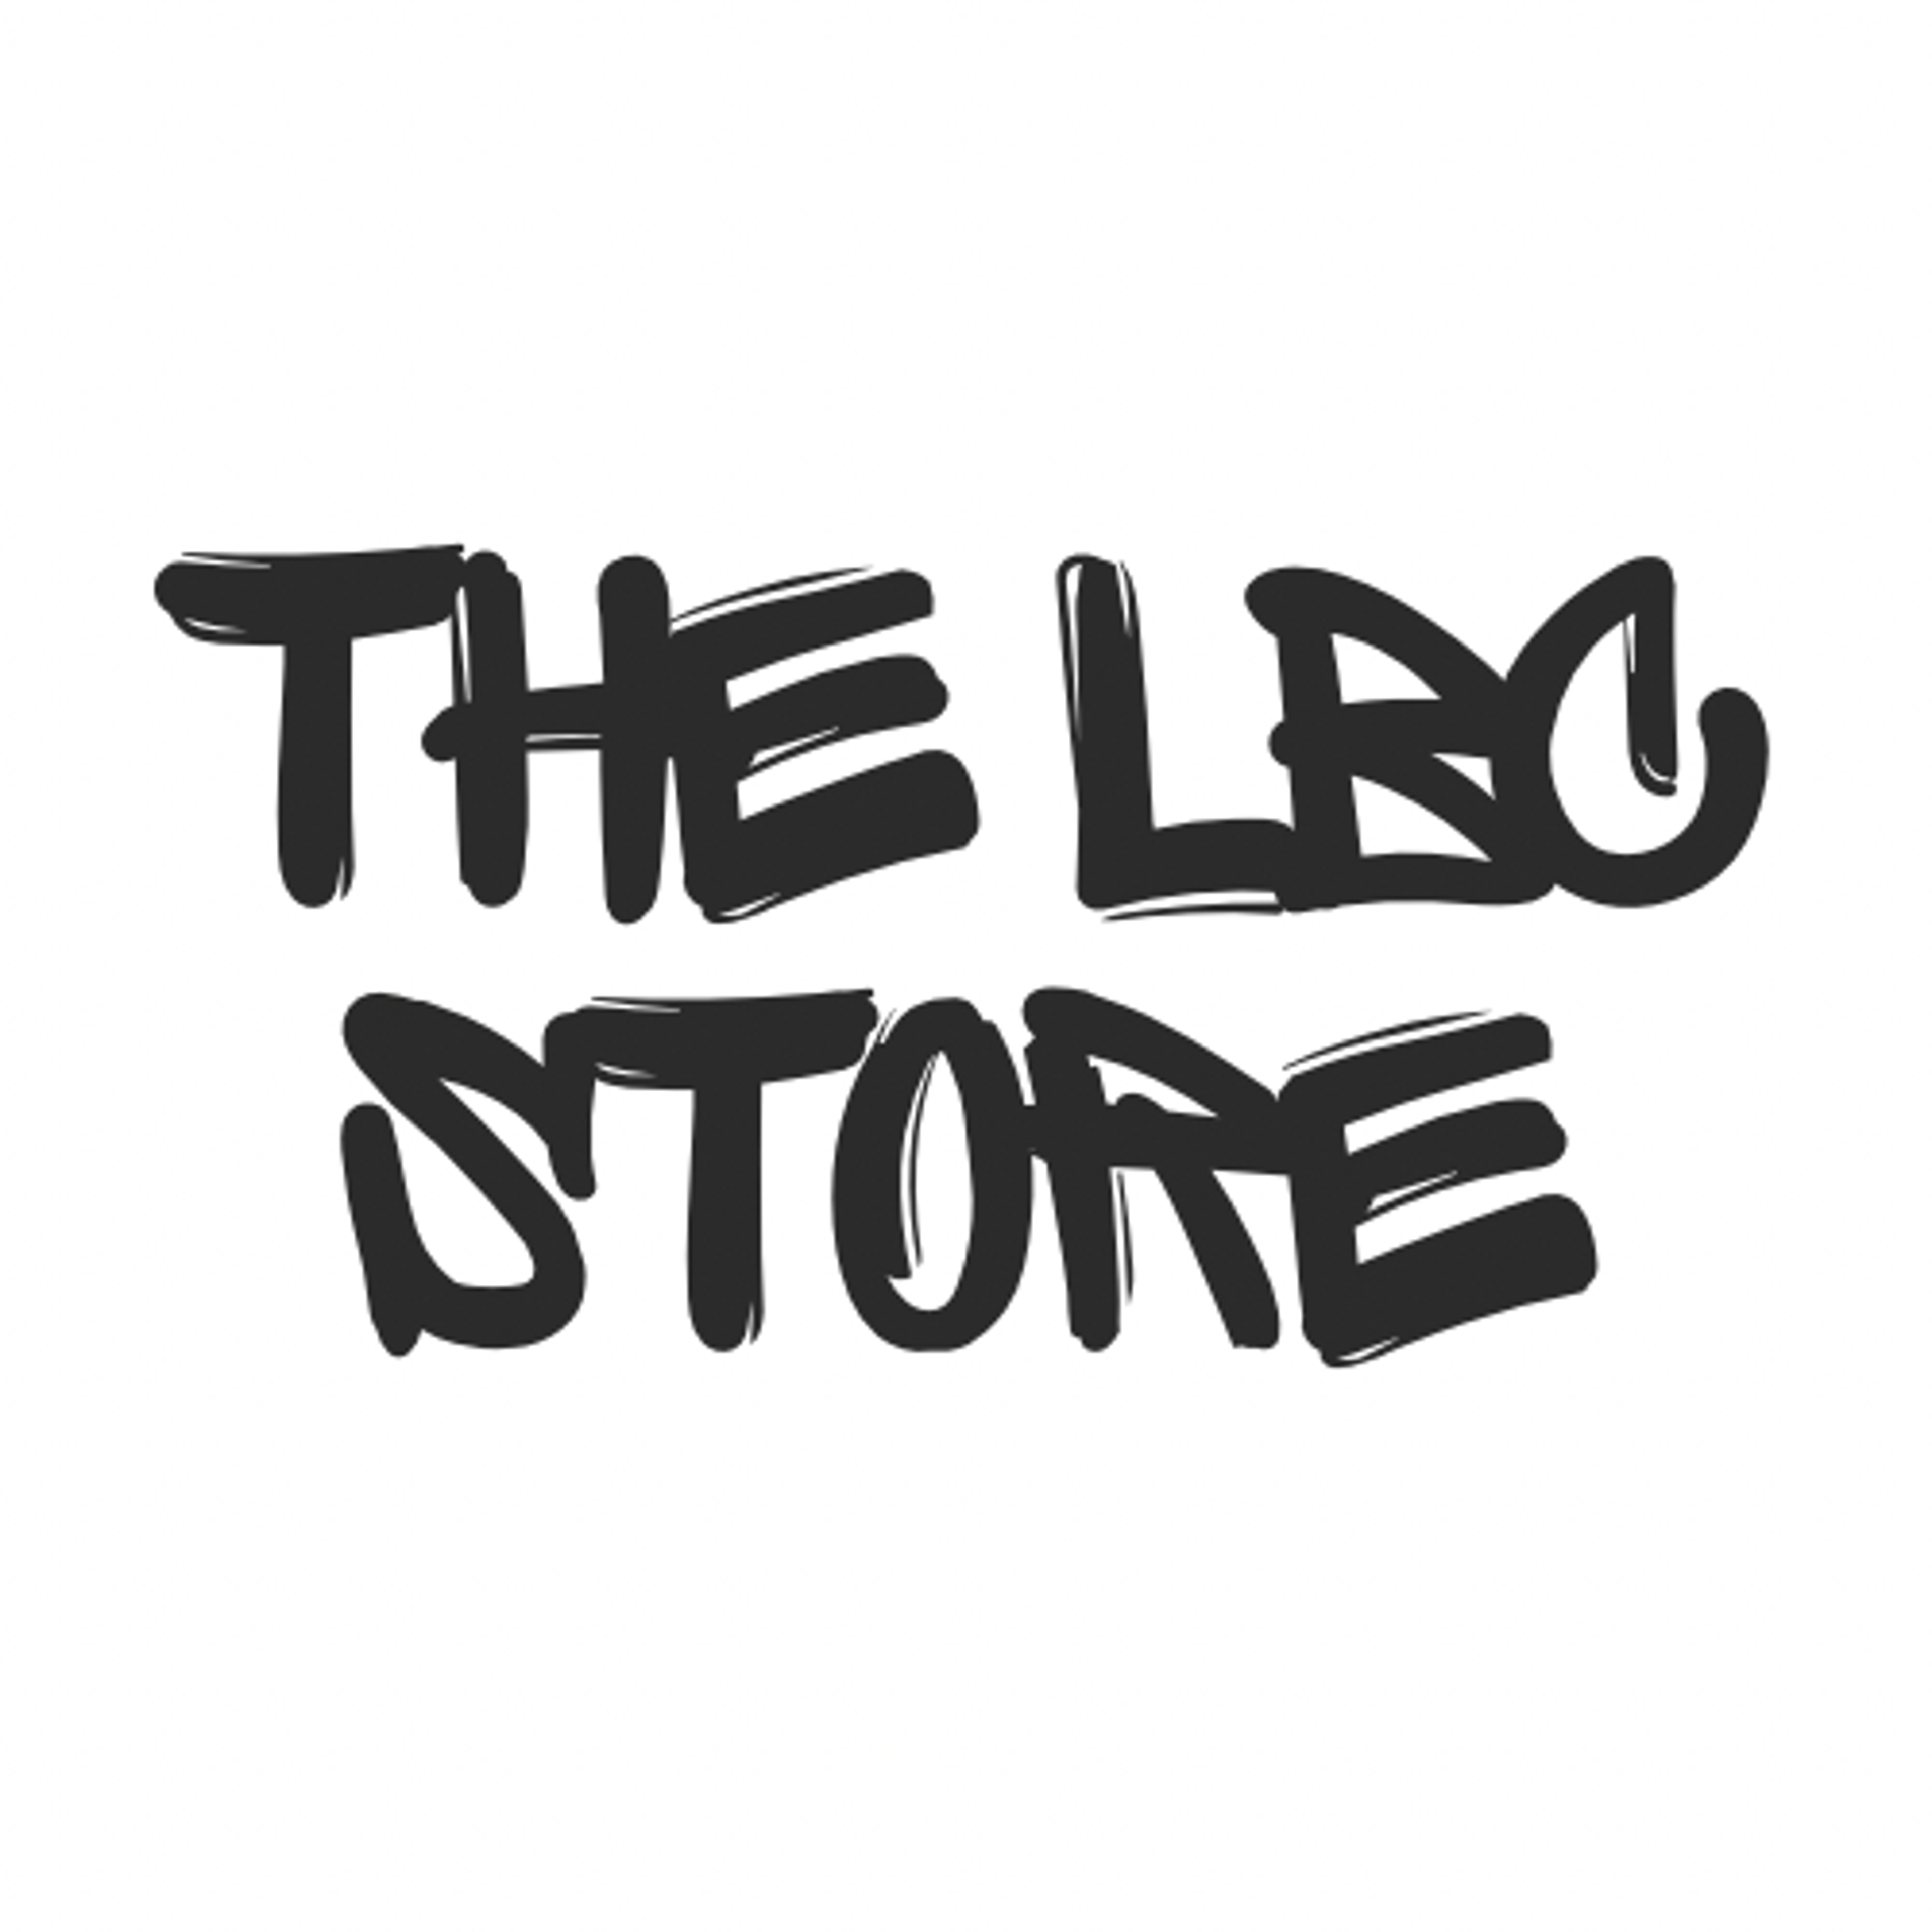 The LBC Store